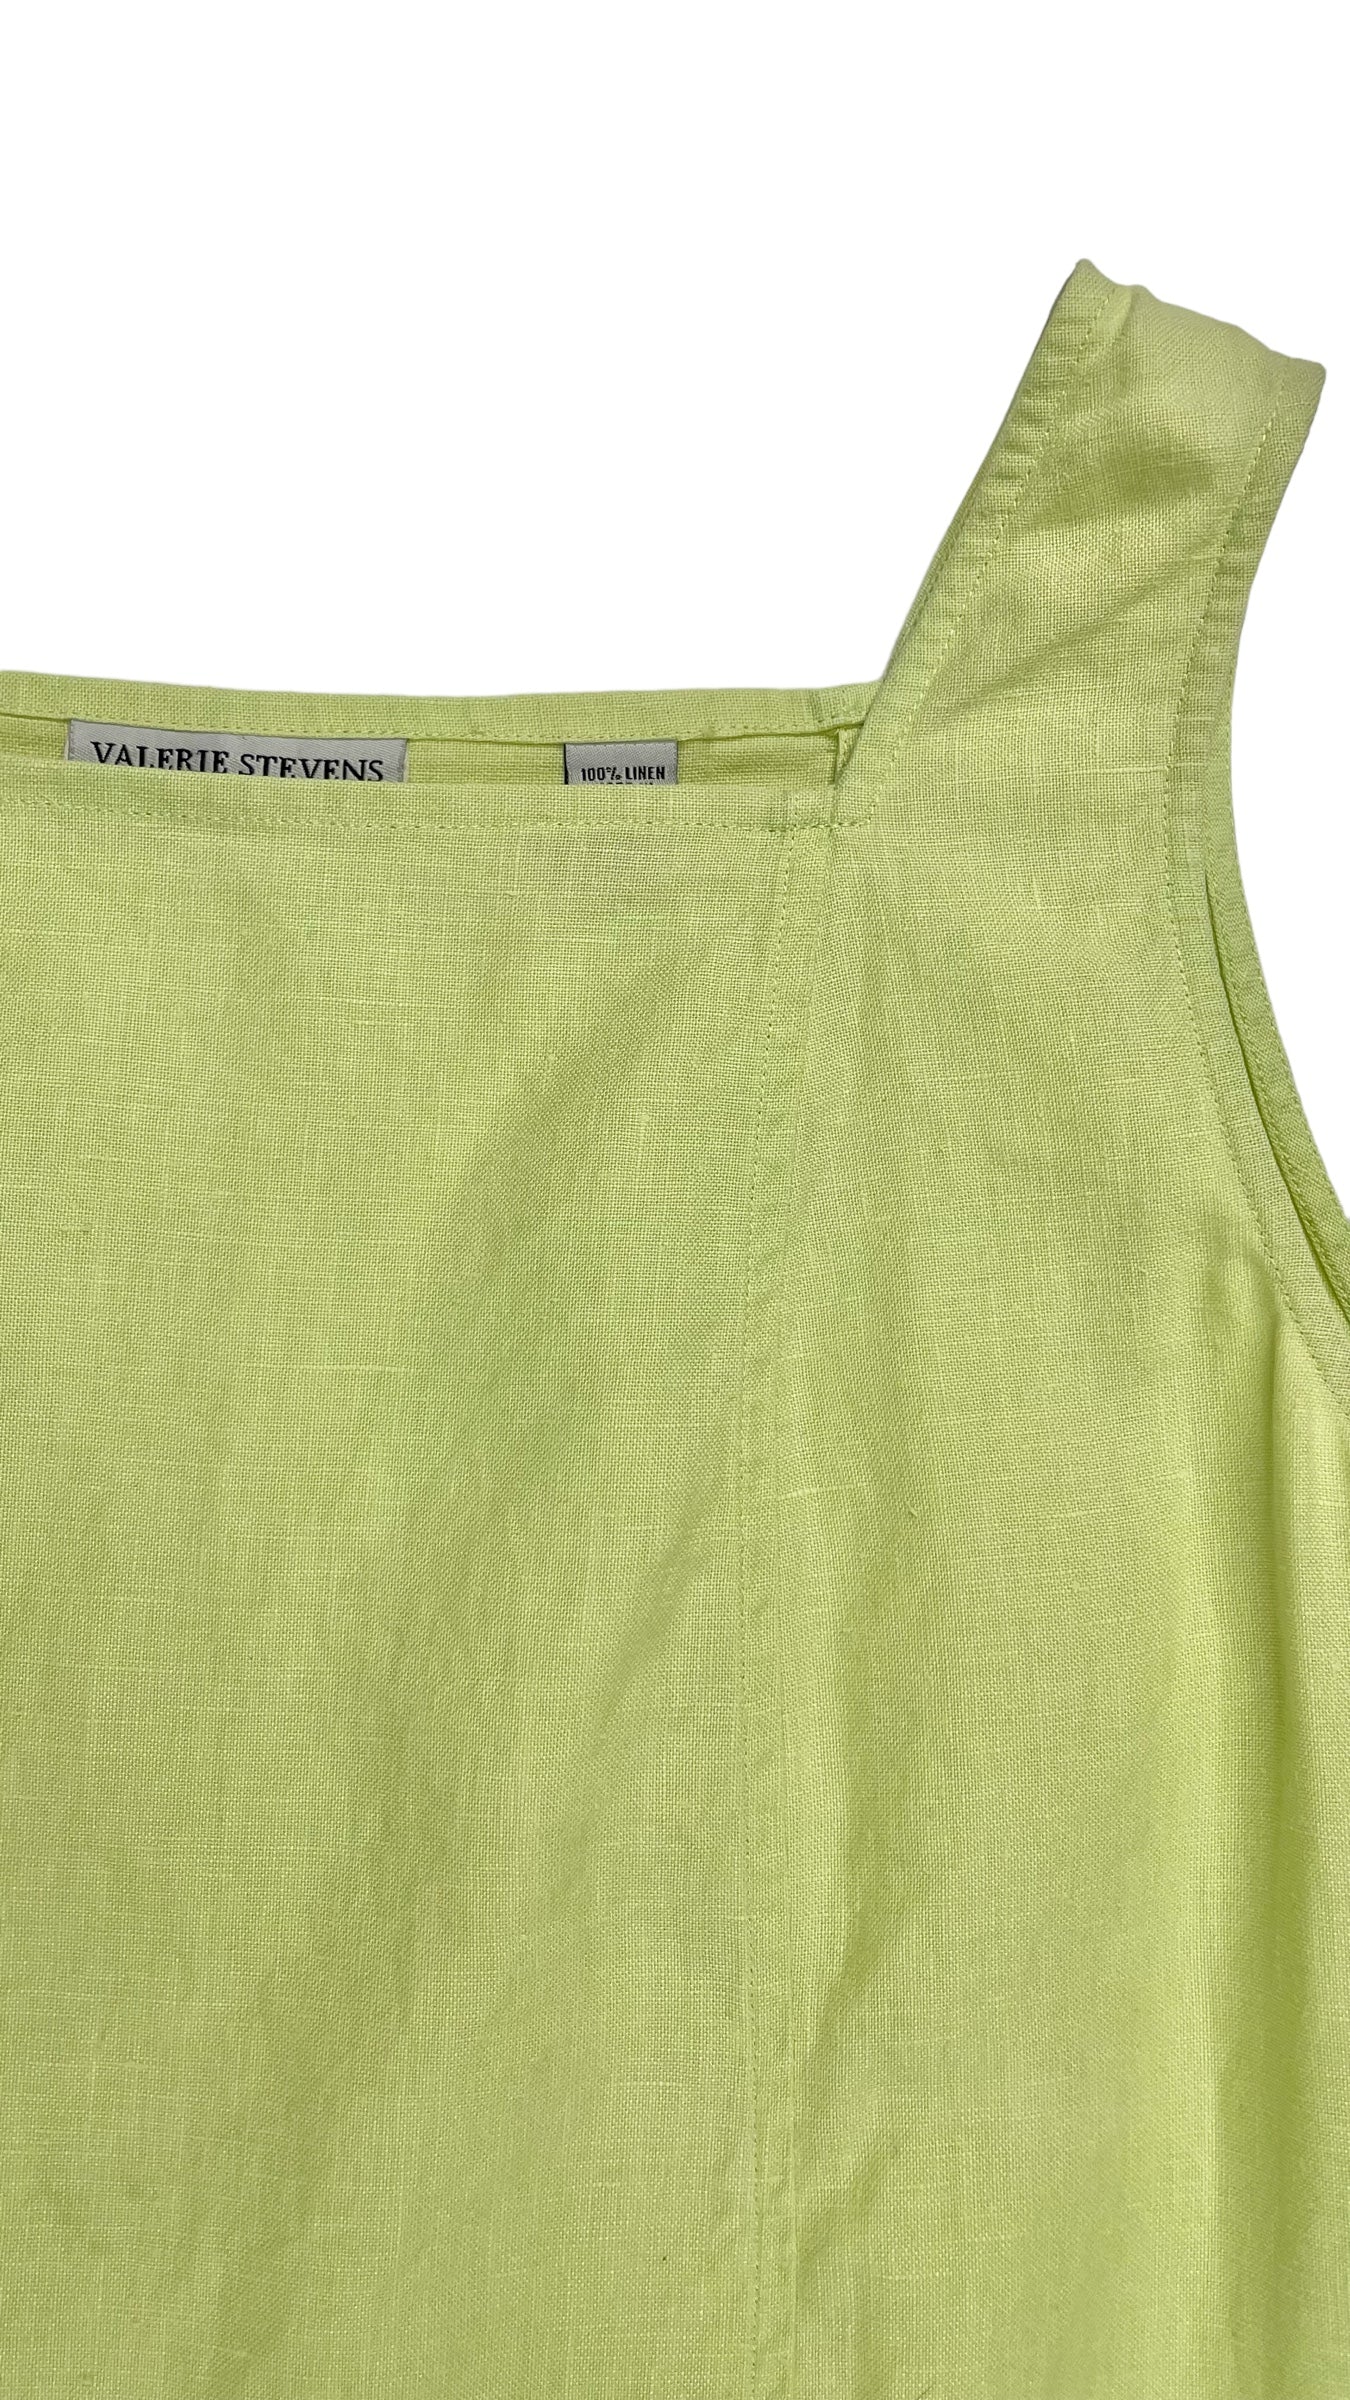 Vintage 90s neon lime green tank dress - Size M